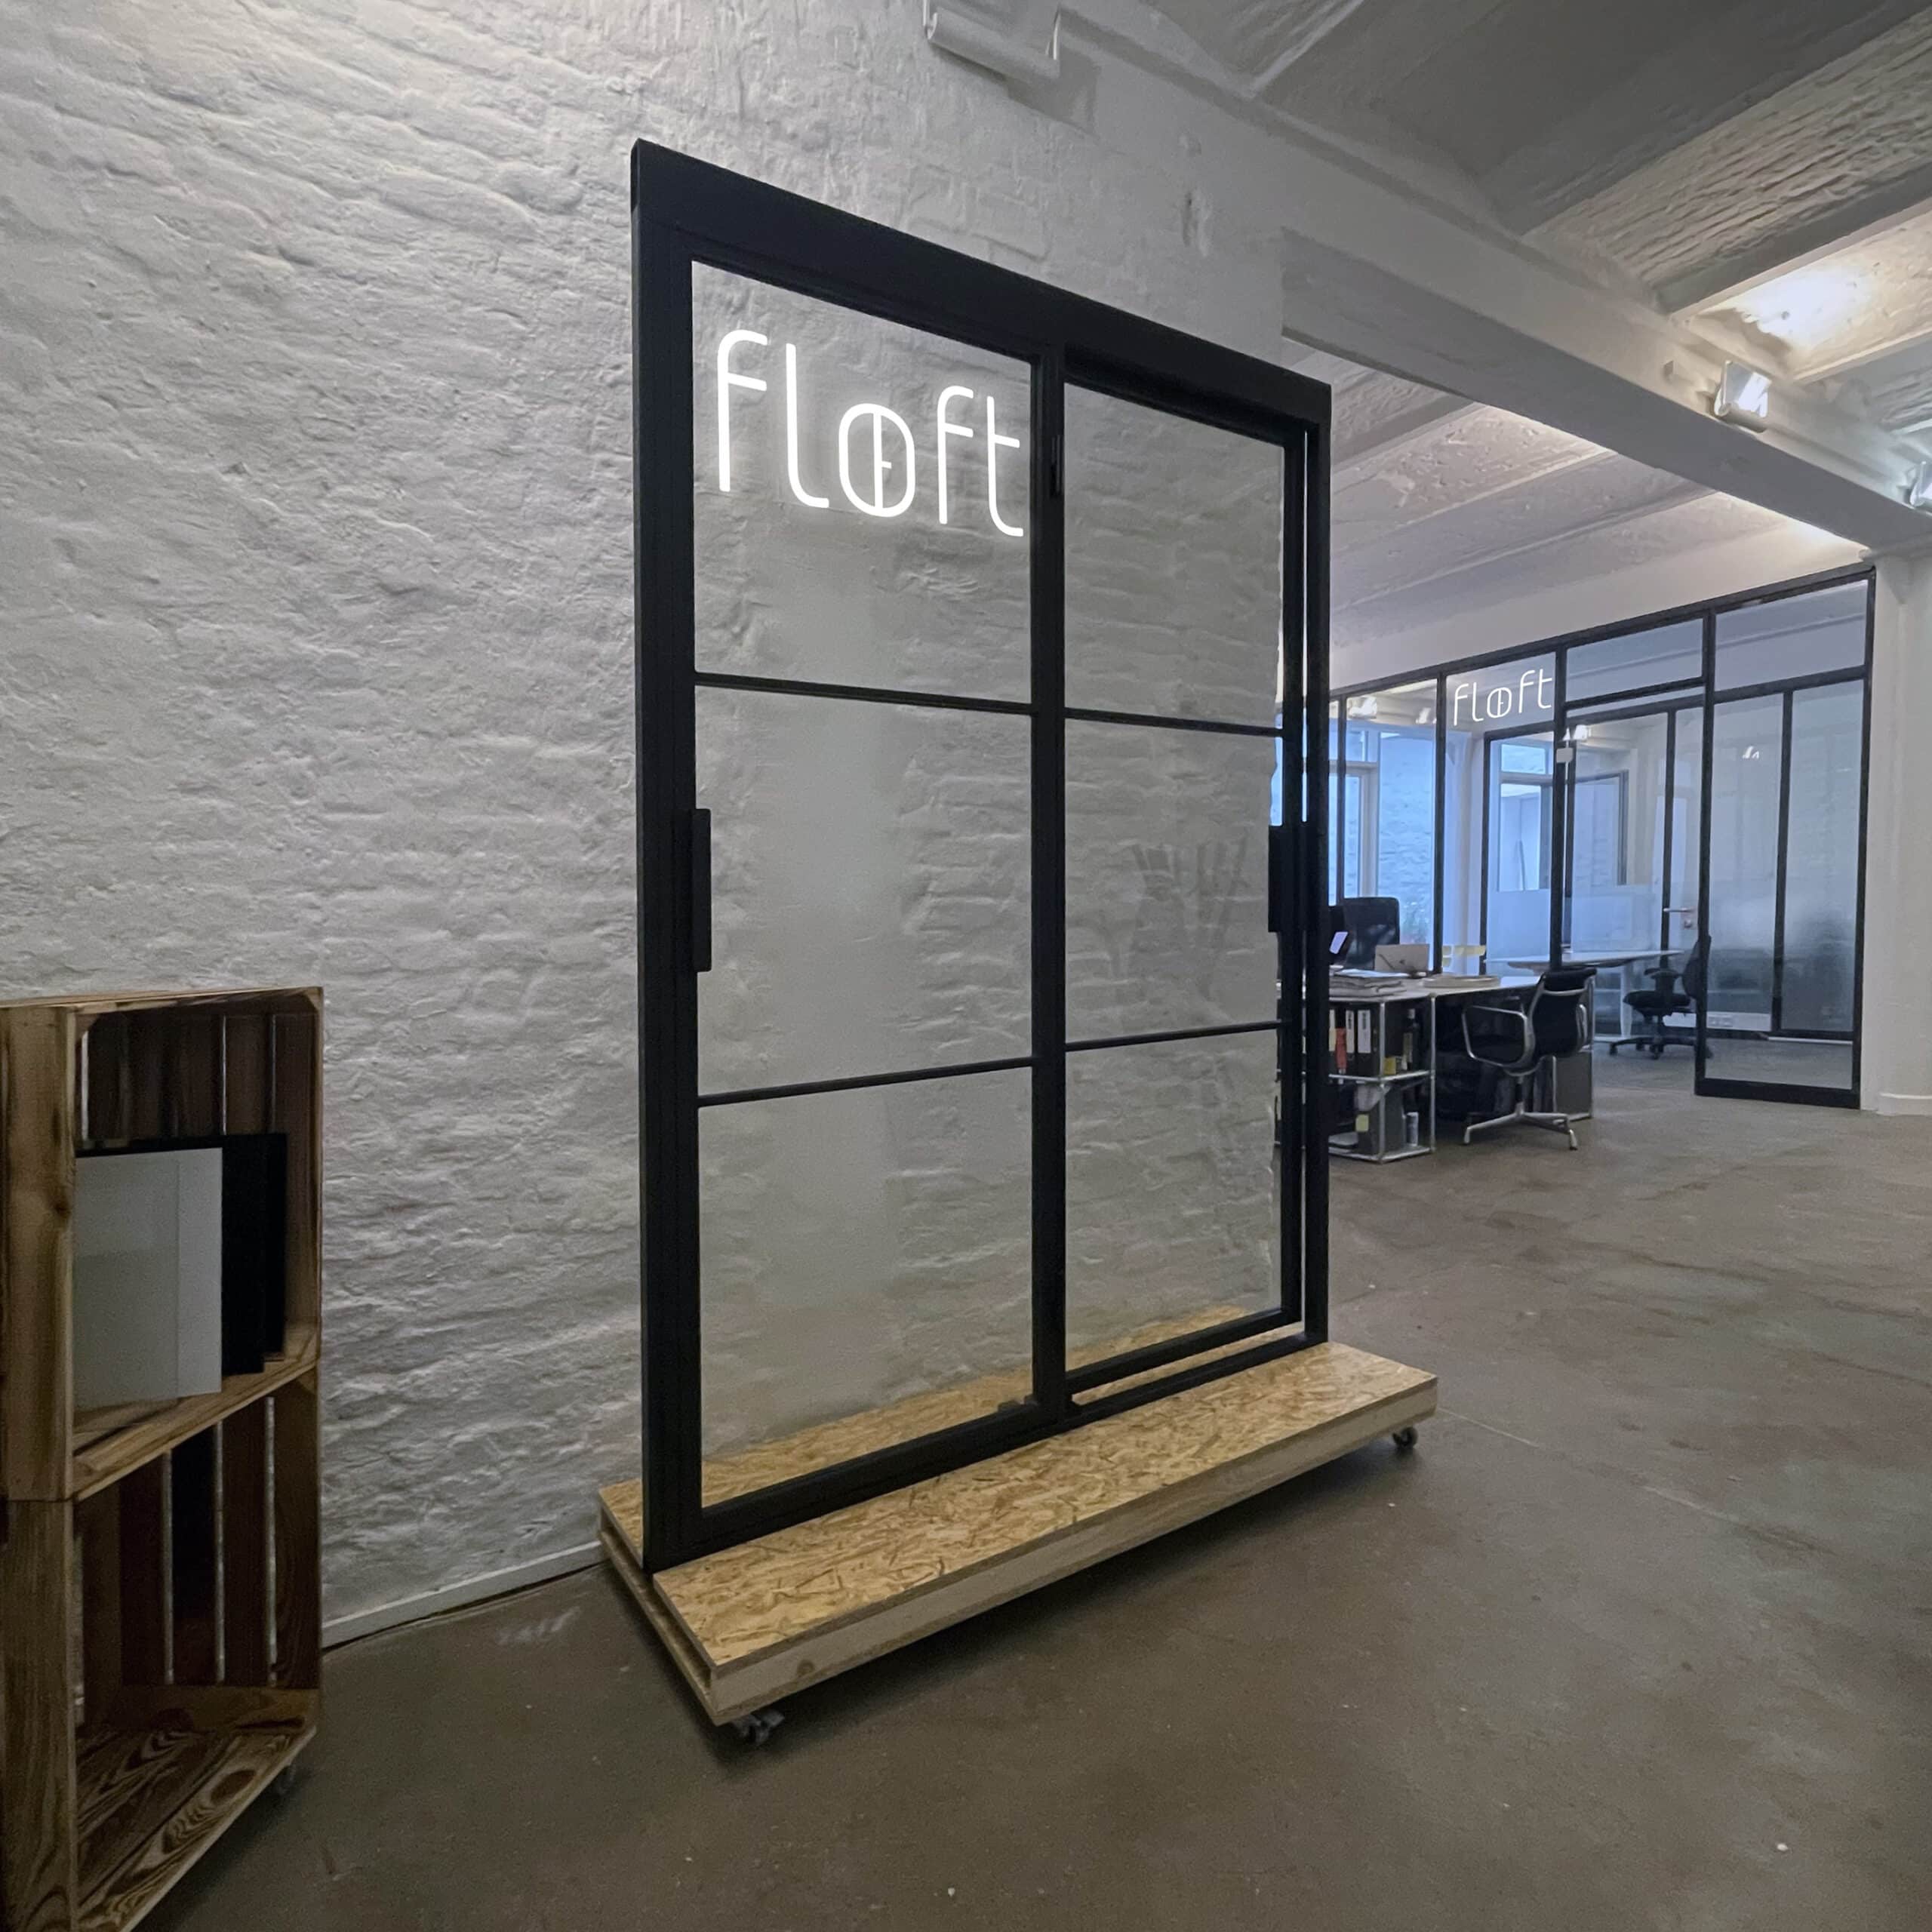 Lofttür in showroom Hamburg, Wände und Türen aus Glas und Stahl besichtigen, Türen-Ausstellung
